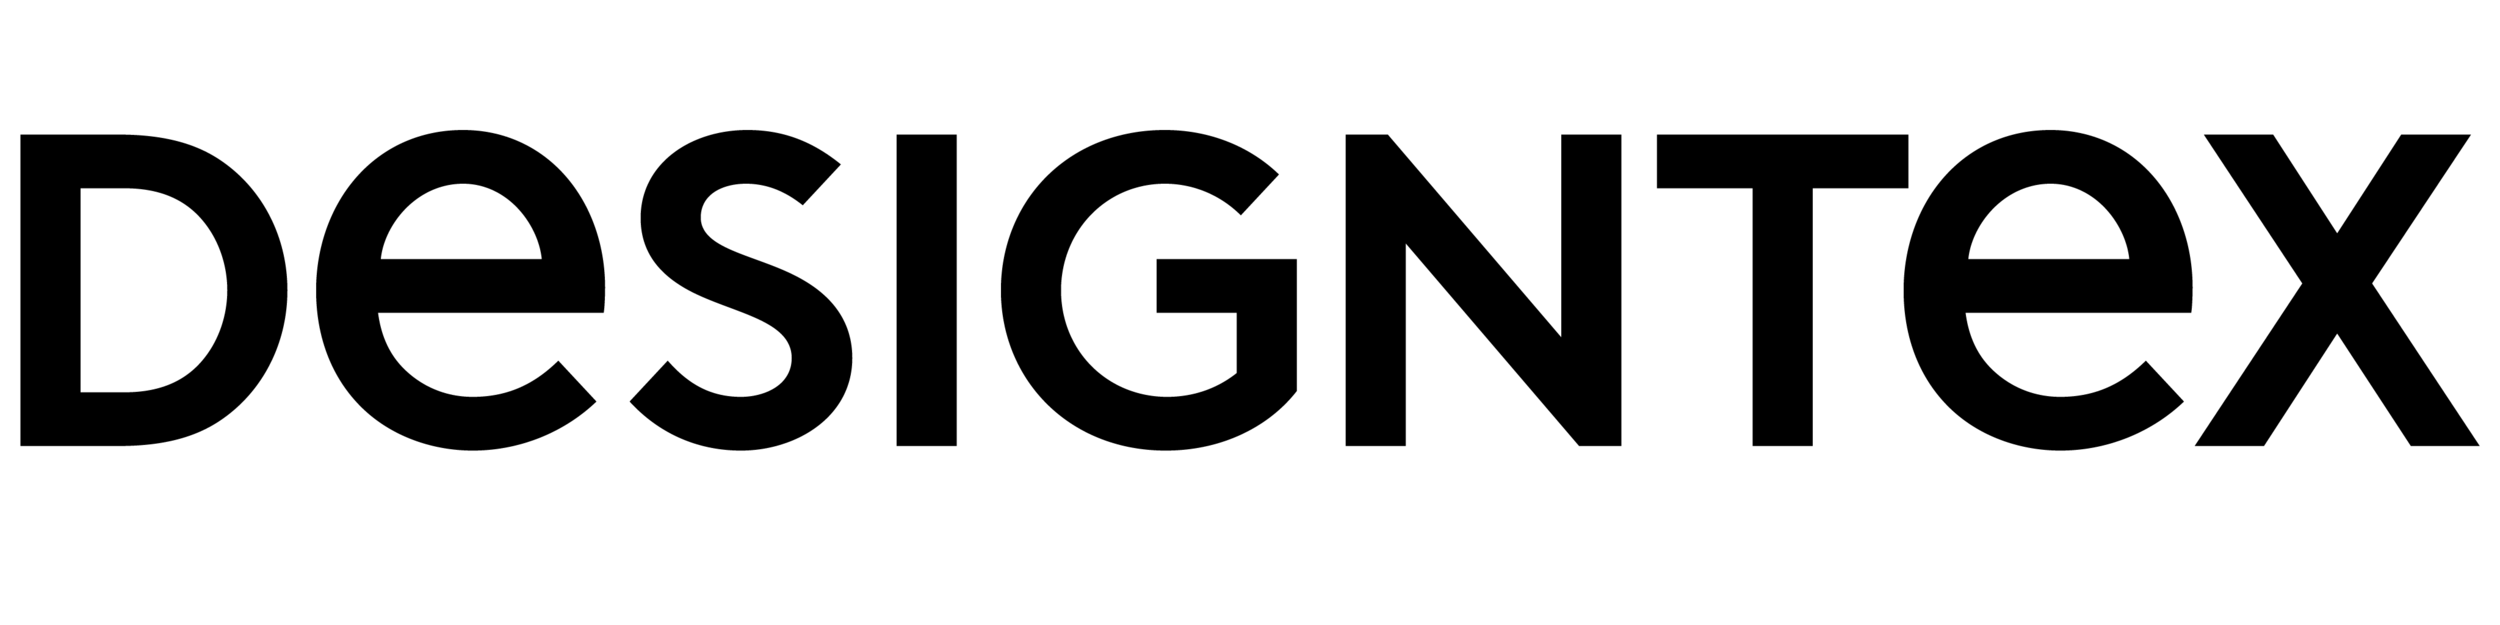 Designtex Logo Black.png